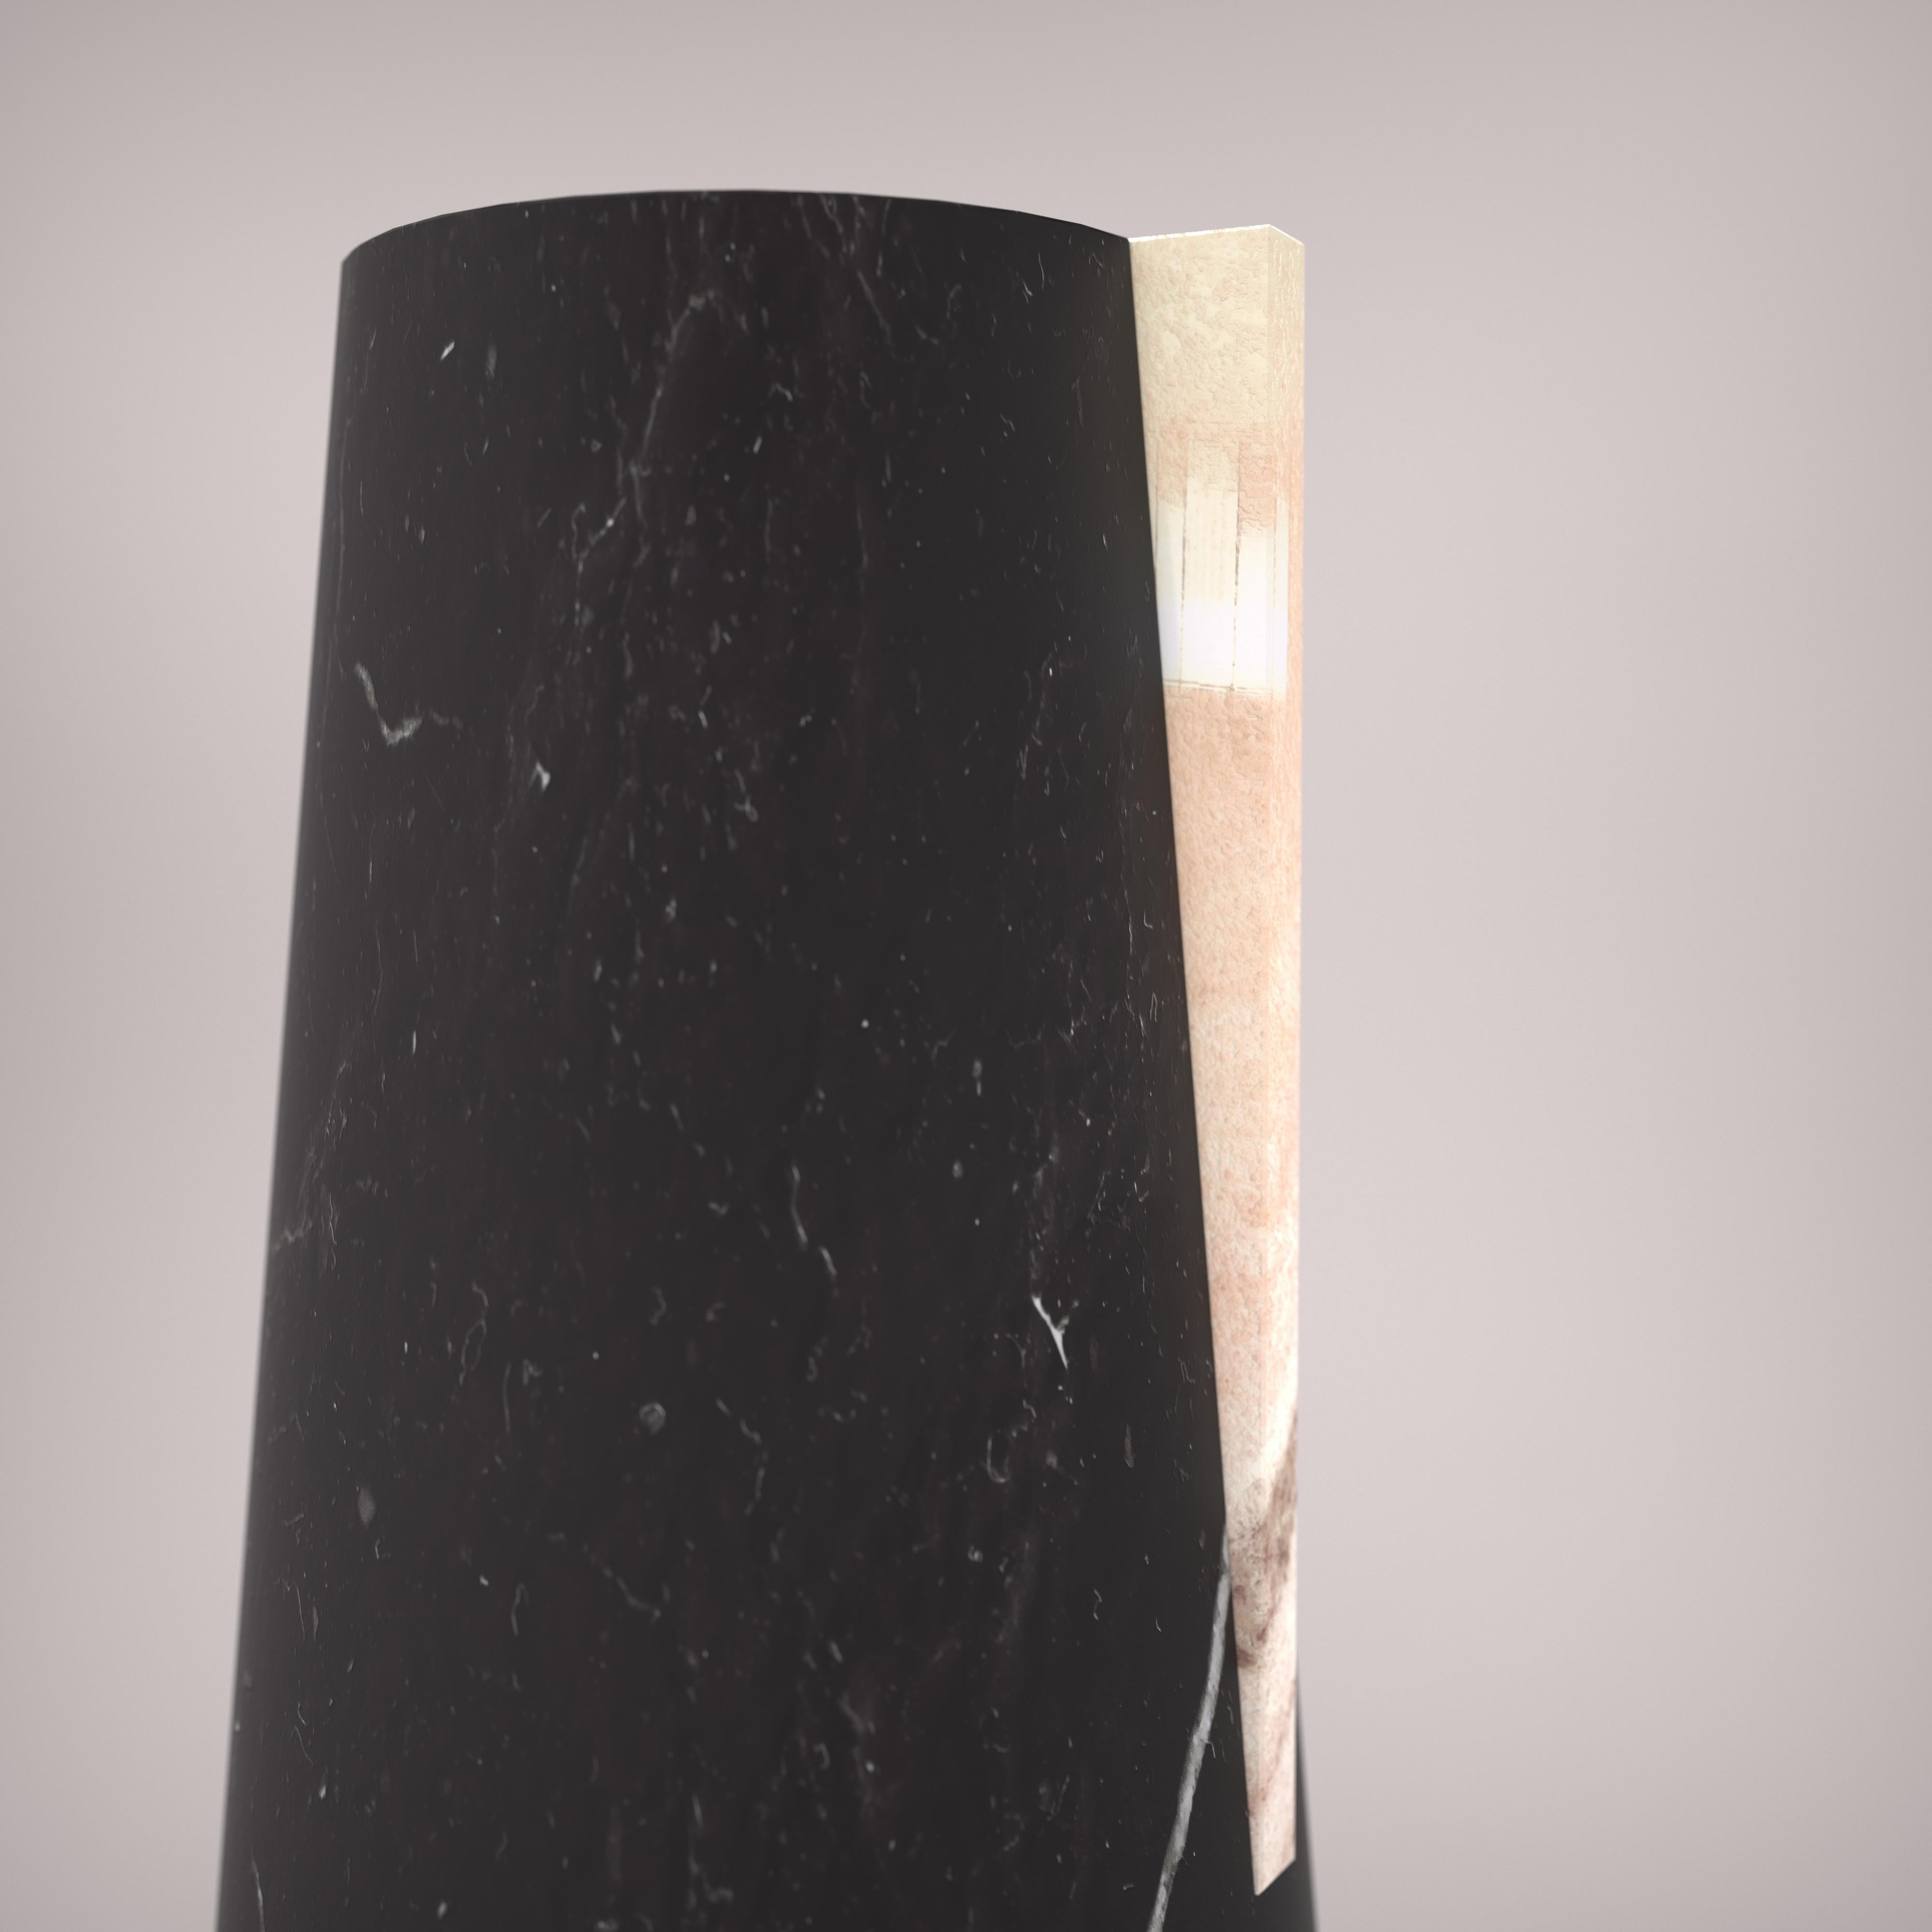 Sandblasted Vaso portafiori in marmo Black Marquina e Rosa Portogallo by Carcino Design For Sale